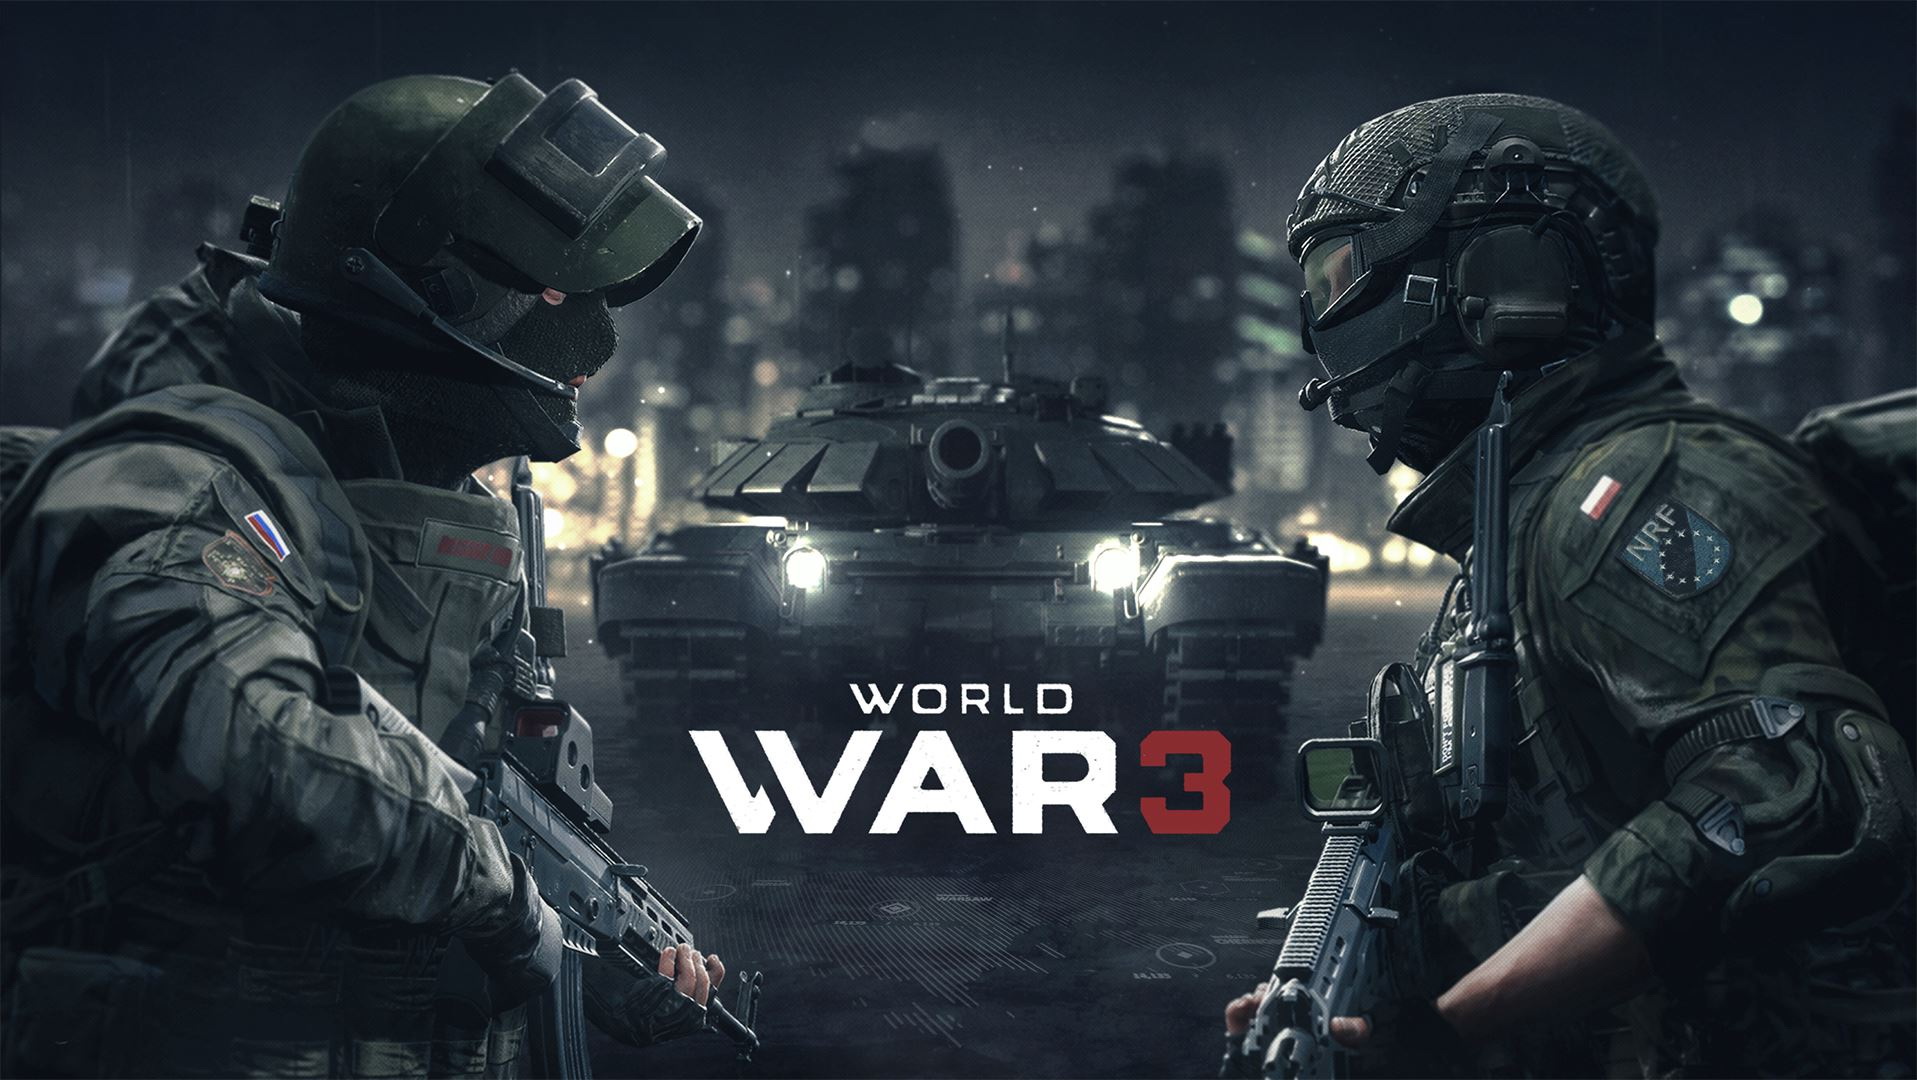 《世界大戰 3》公開測試延期 將繼續販售封閉測試組合包《World War 3》